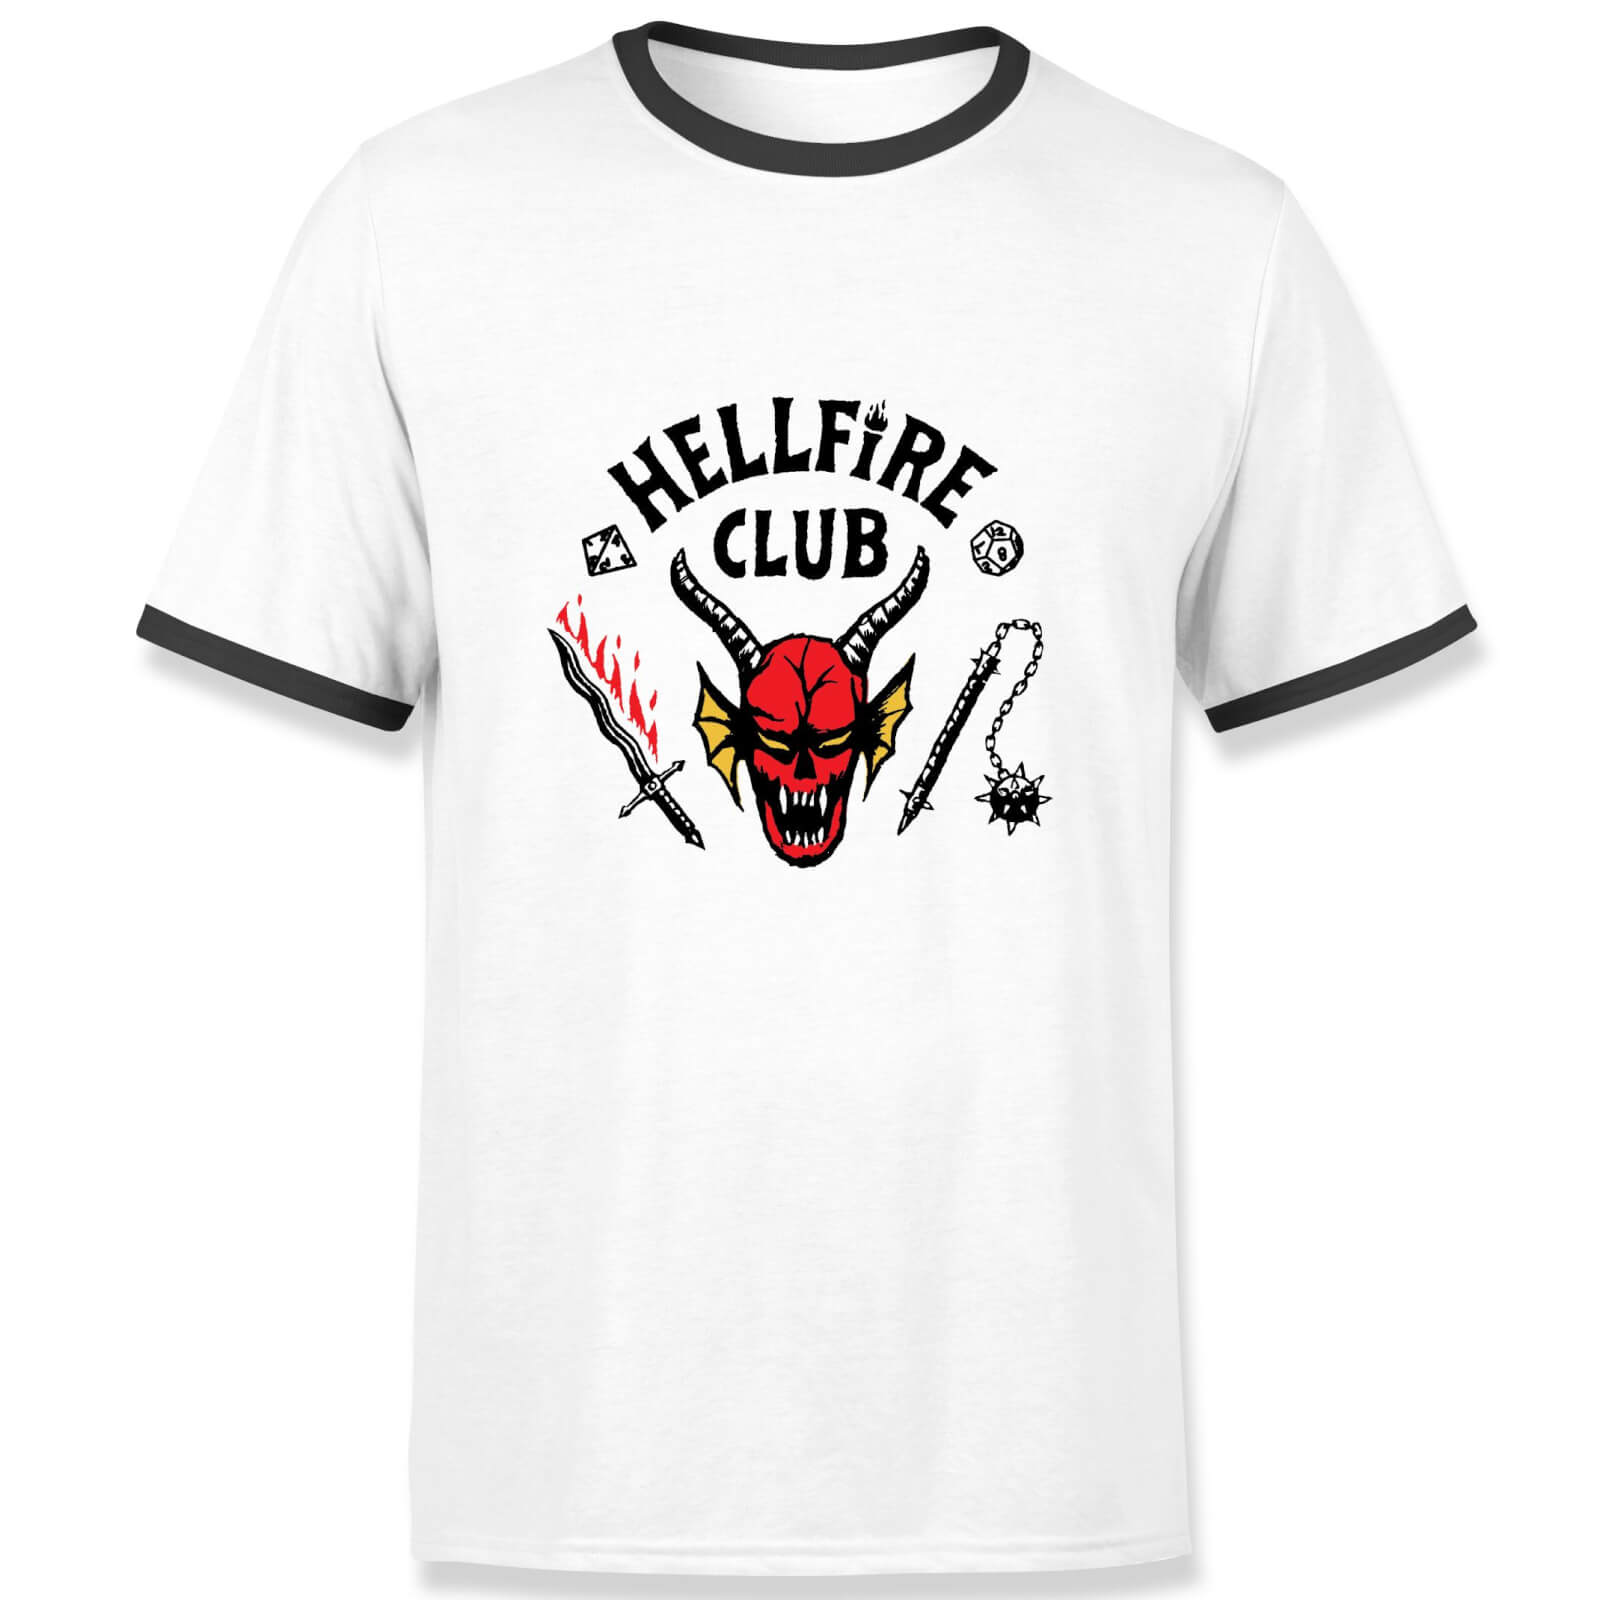 Stranger Things Hellfire Club Unisex Ringer T-Shirt - White/Black - L - White/Black